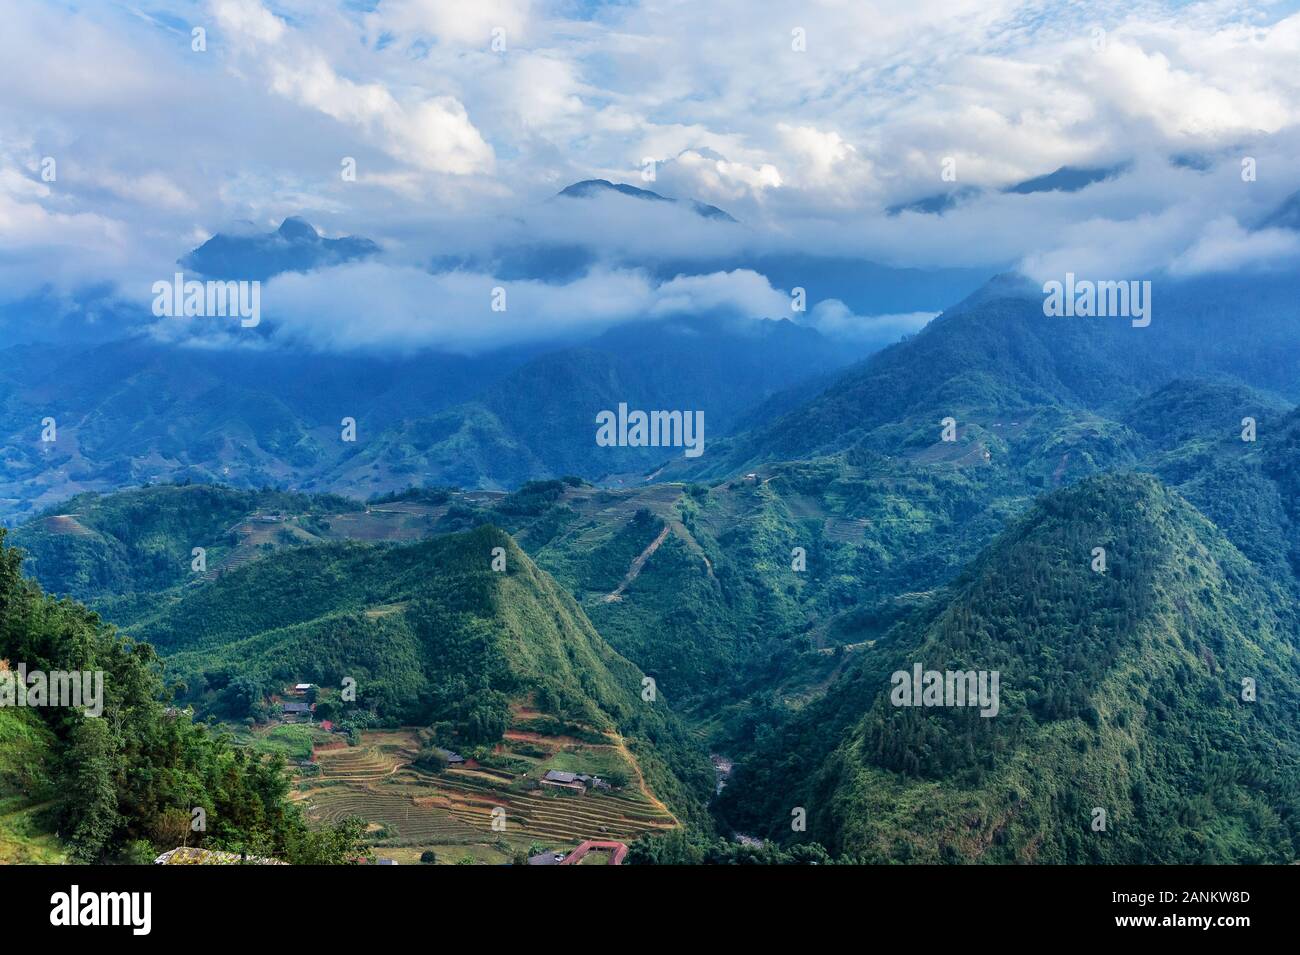 Die schöne Landschaft von Cat Cat Dorf, beliebte touristische trekking Ziel. Reis Bereich Terrassen. Bergblick in den Wolken. Sapa, Lao Cai Provinz Stockfoto